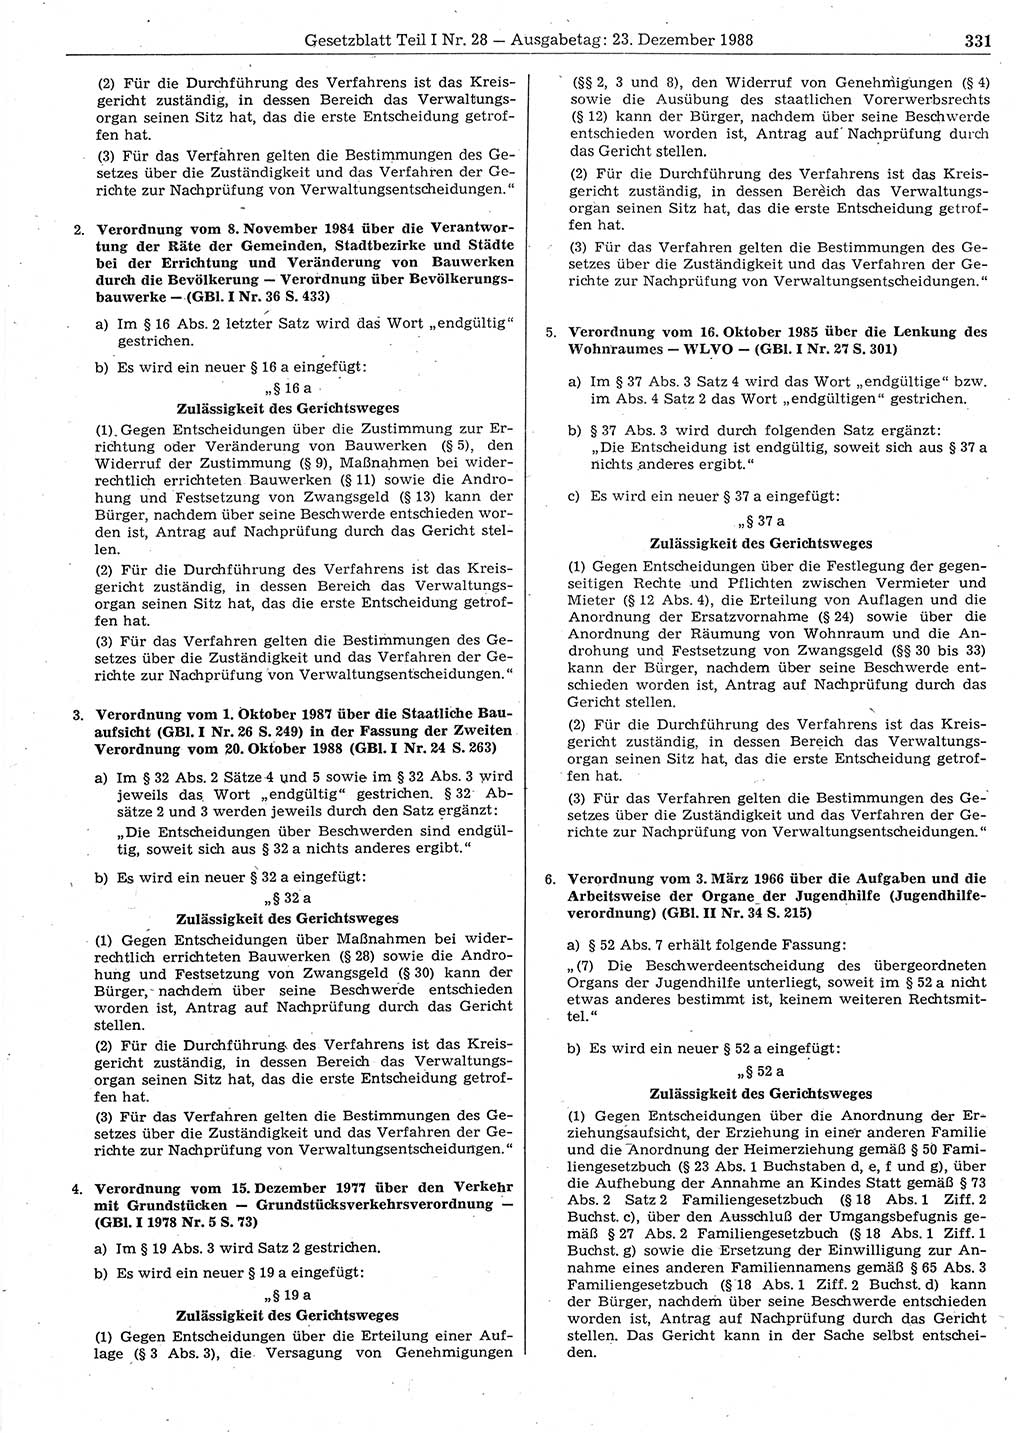 Gesetzblatt (GBl.) der Deutschen Demokratischen Republik (DDR) Teil Ⅰ 1988, Seite 331 (GBl. DDR Ⅰ 1988, S. 331)